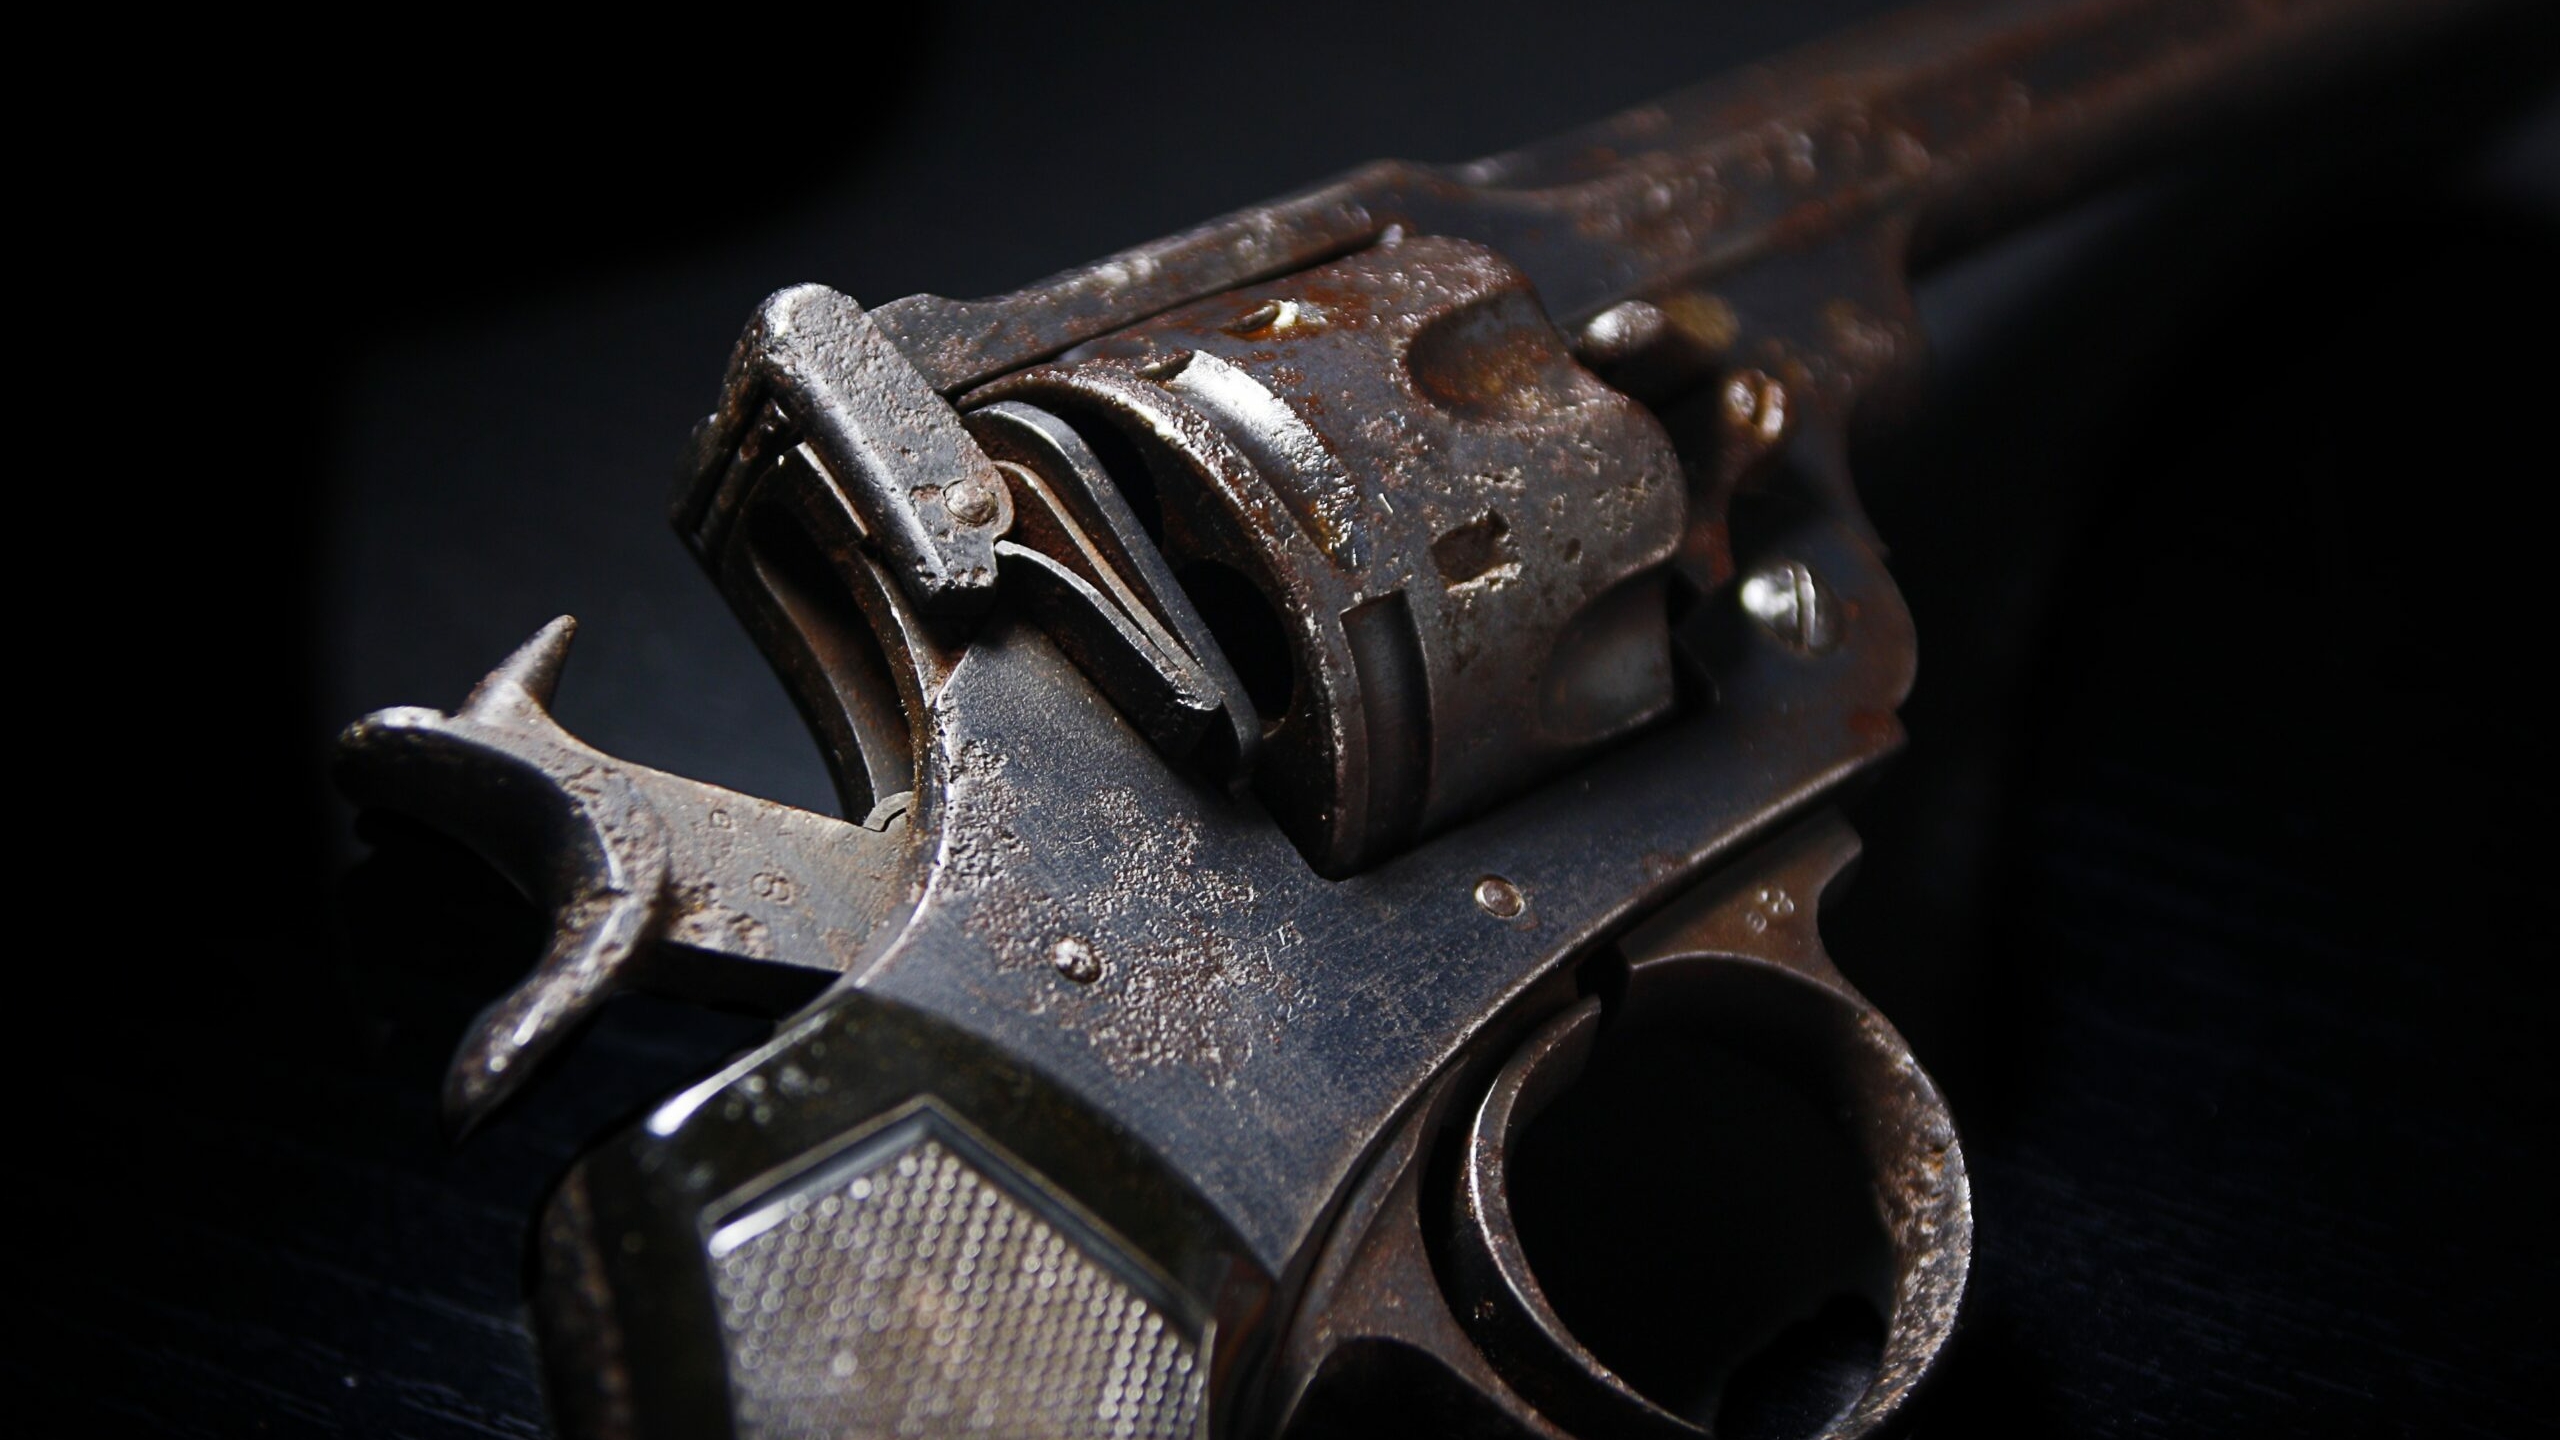 Застрелившего из револьвера жителя Мурино разыскивает полиция